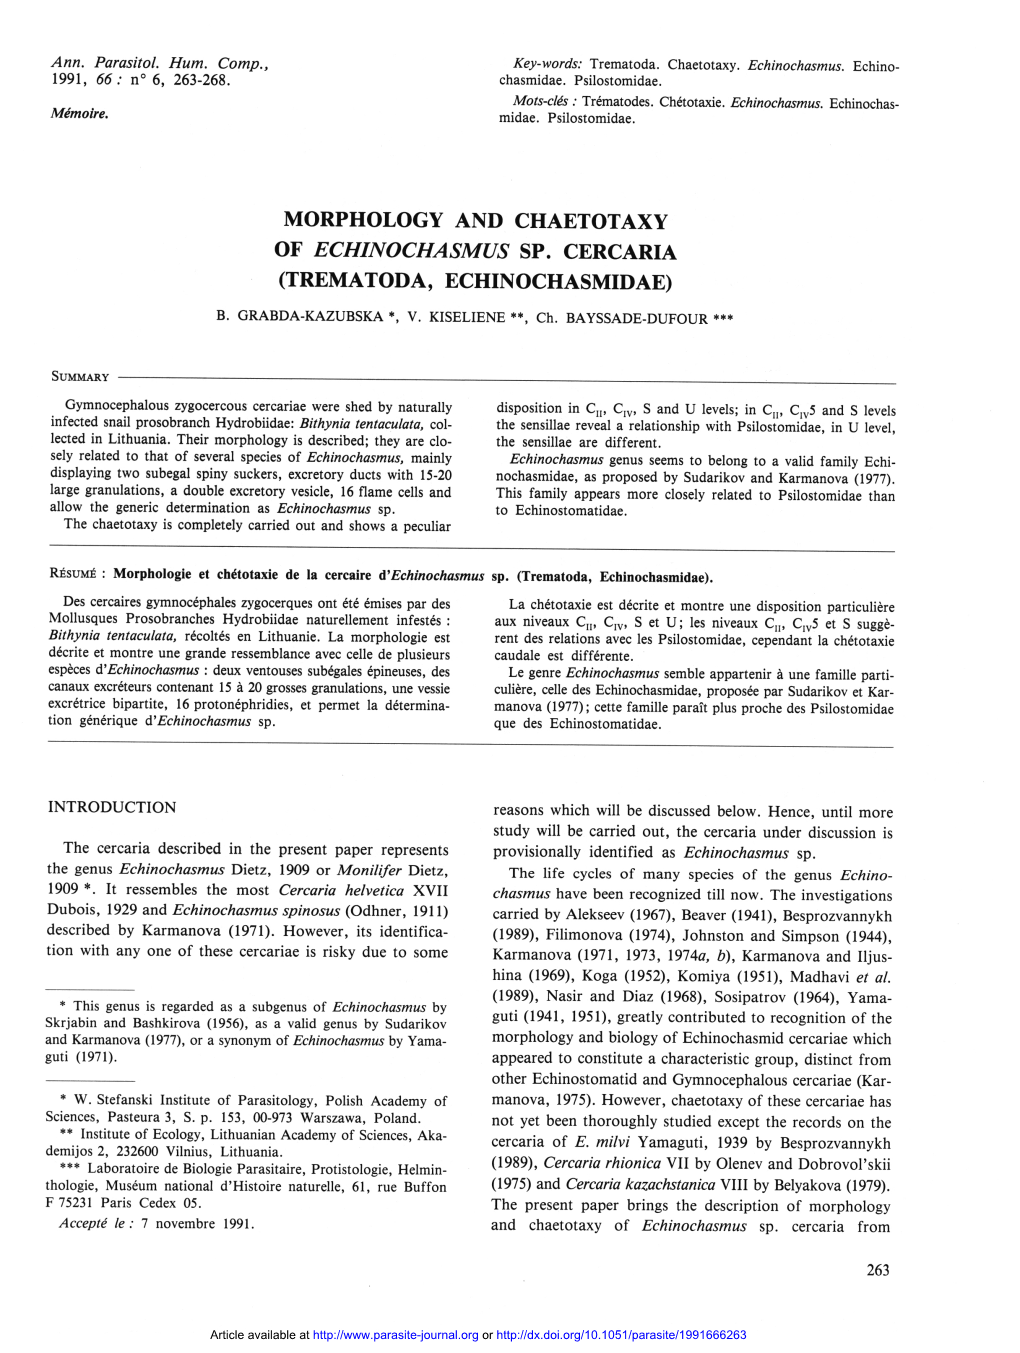 Morphology and Chaetotaxy of Echinochasmus Sp. Cercaria (Trematoda, Echinochasmidae) B